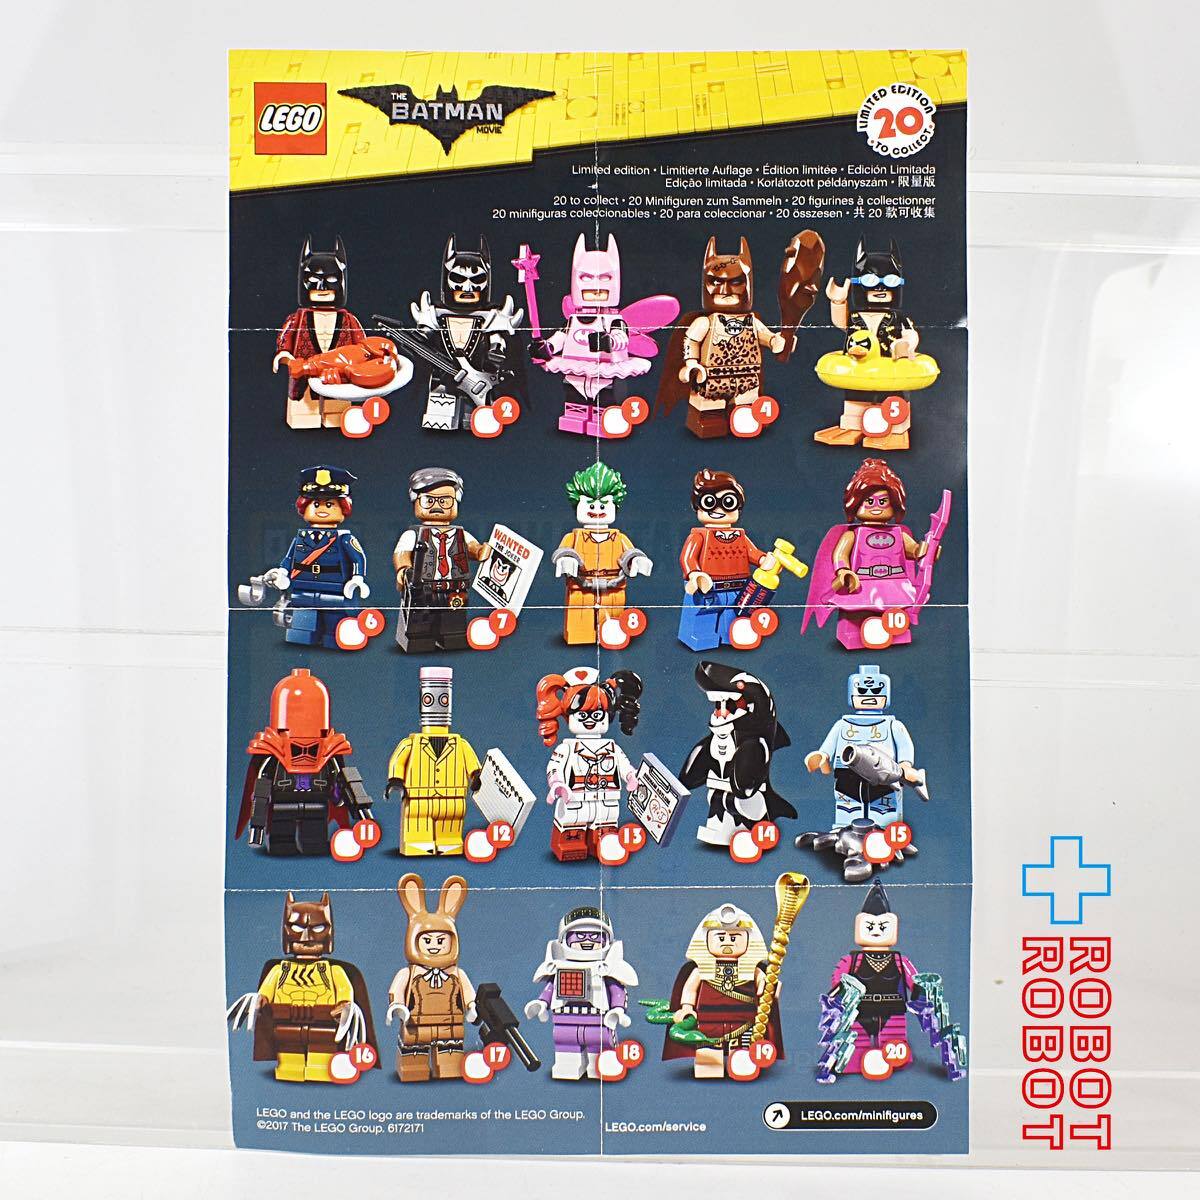 LEGO レゴ ミニフィグ ザ・バットマン ムービー ツタンカーメン